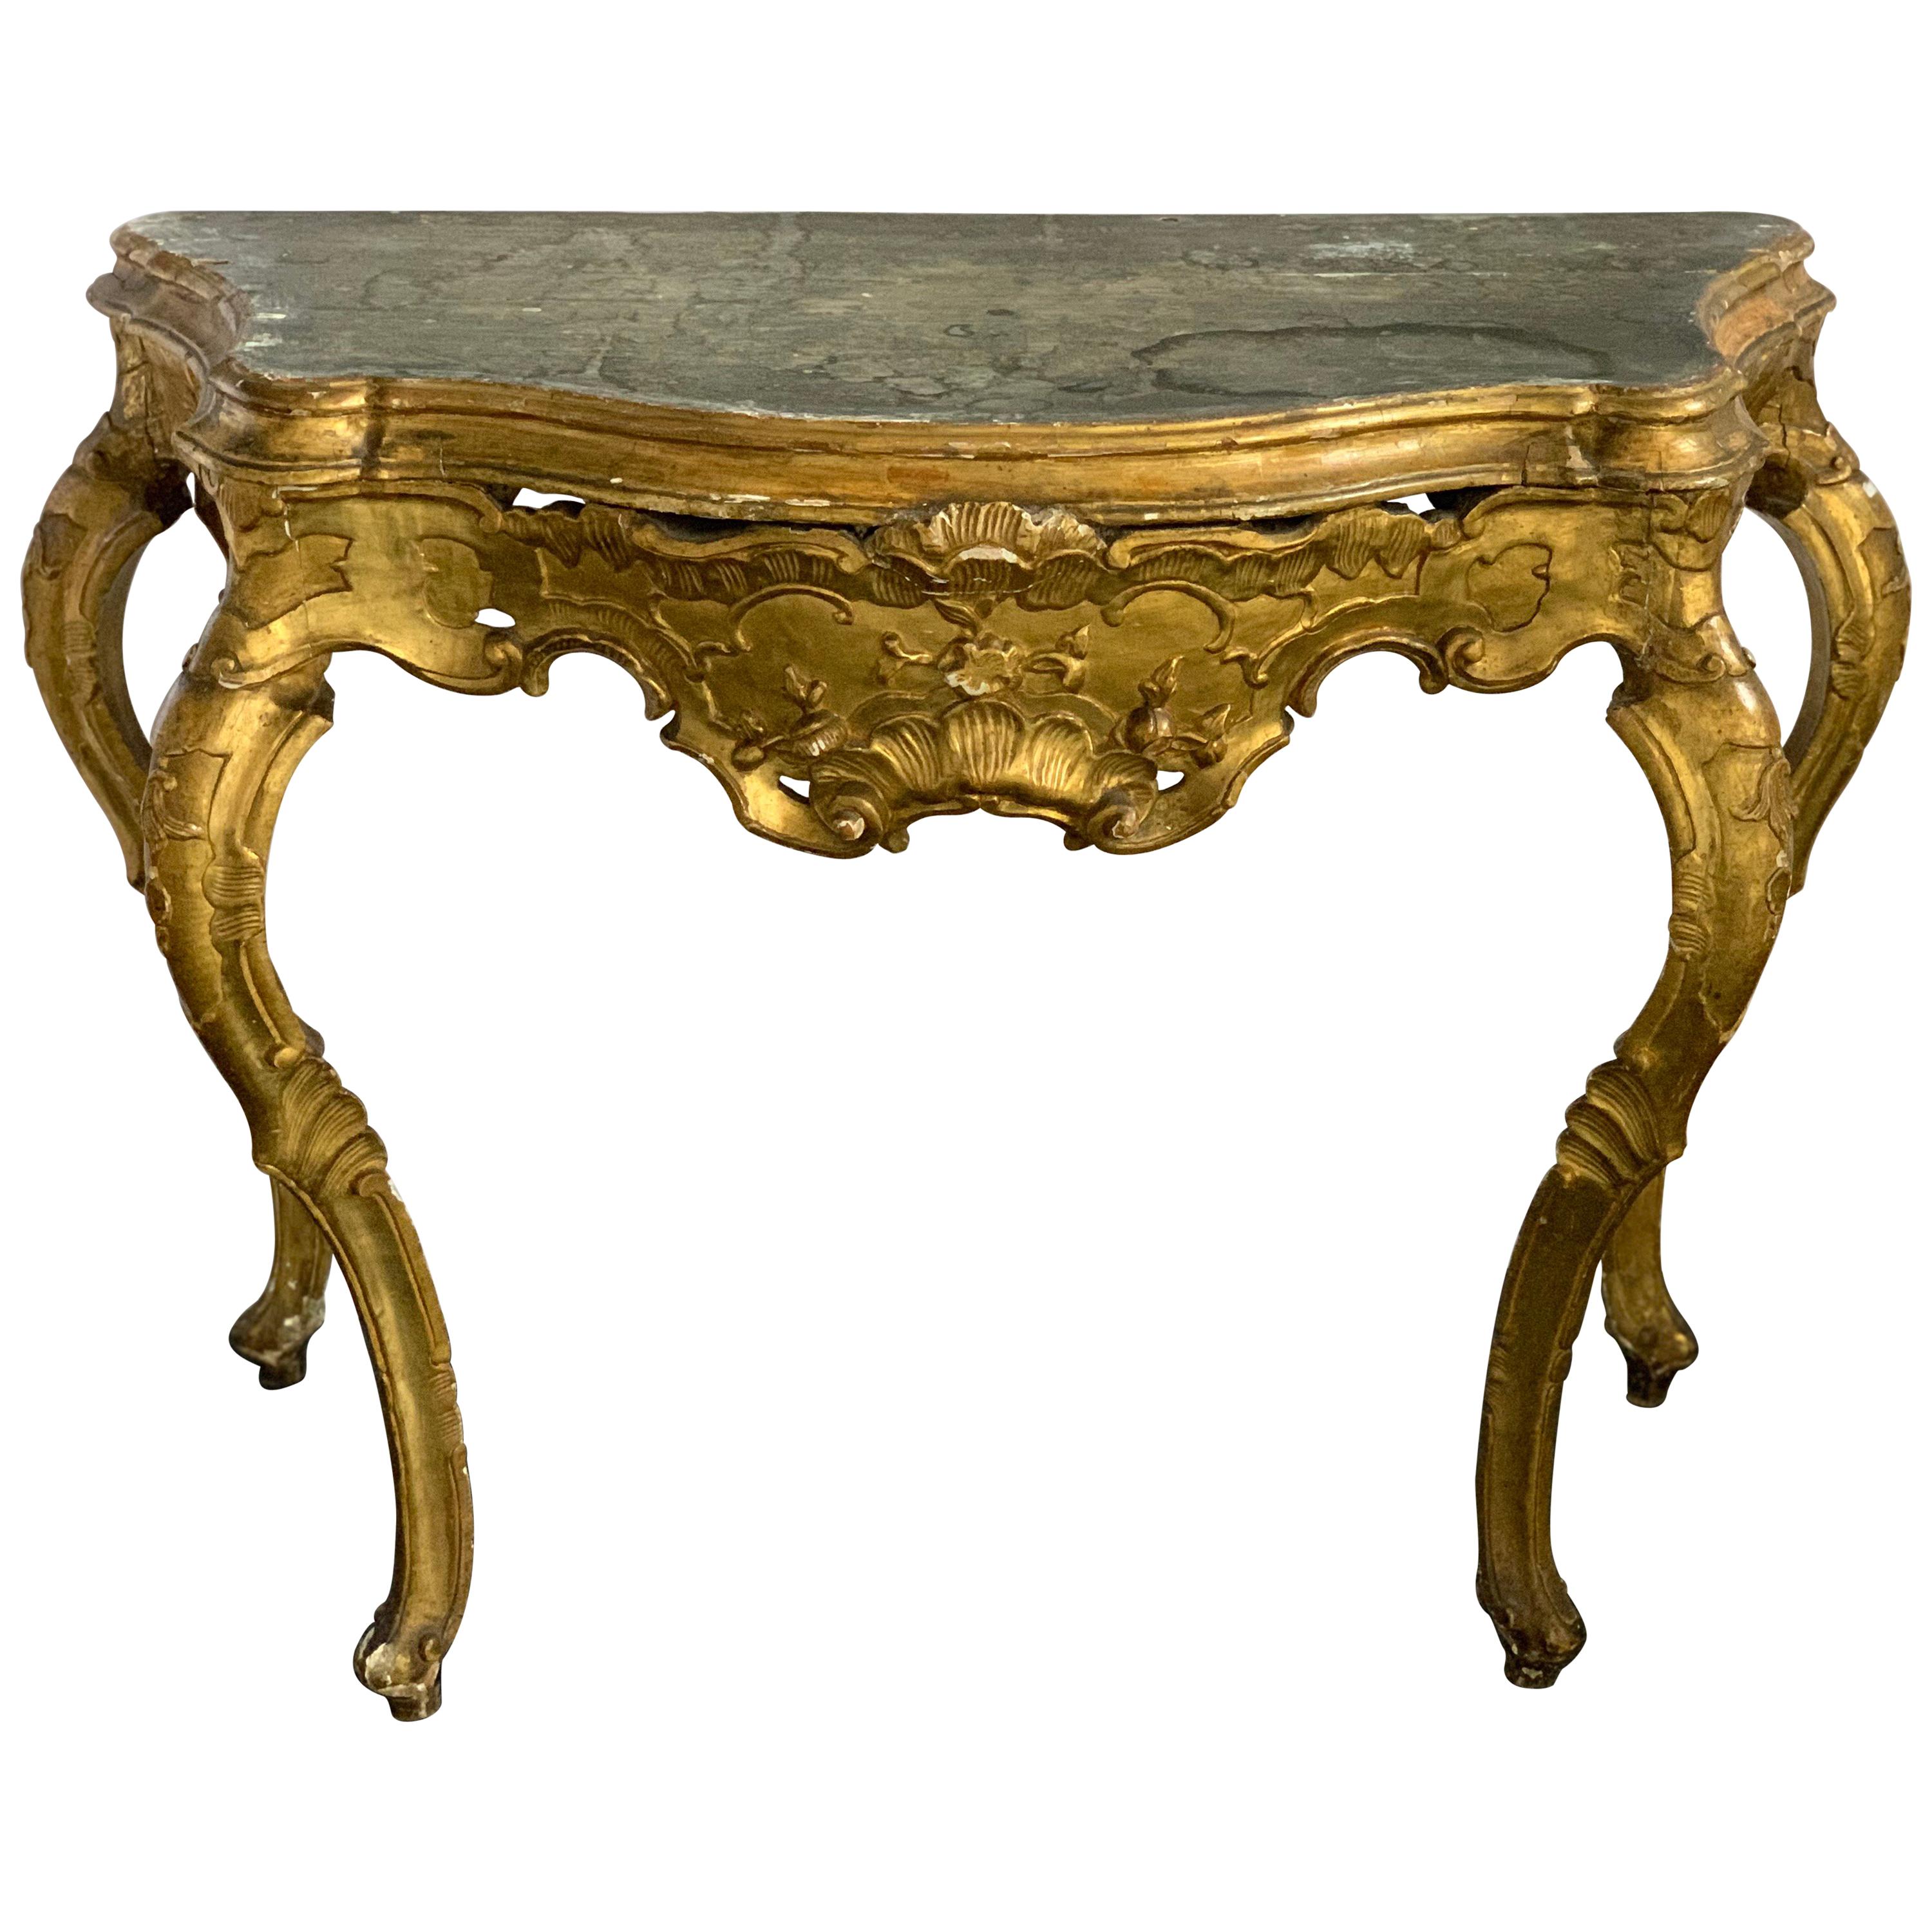 Console vénitienne du XVIIIe siècle dorée à l'or, Italie